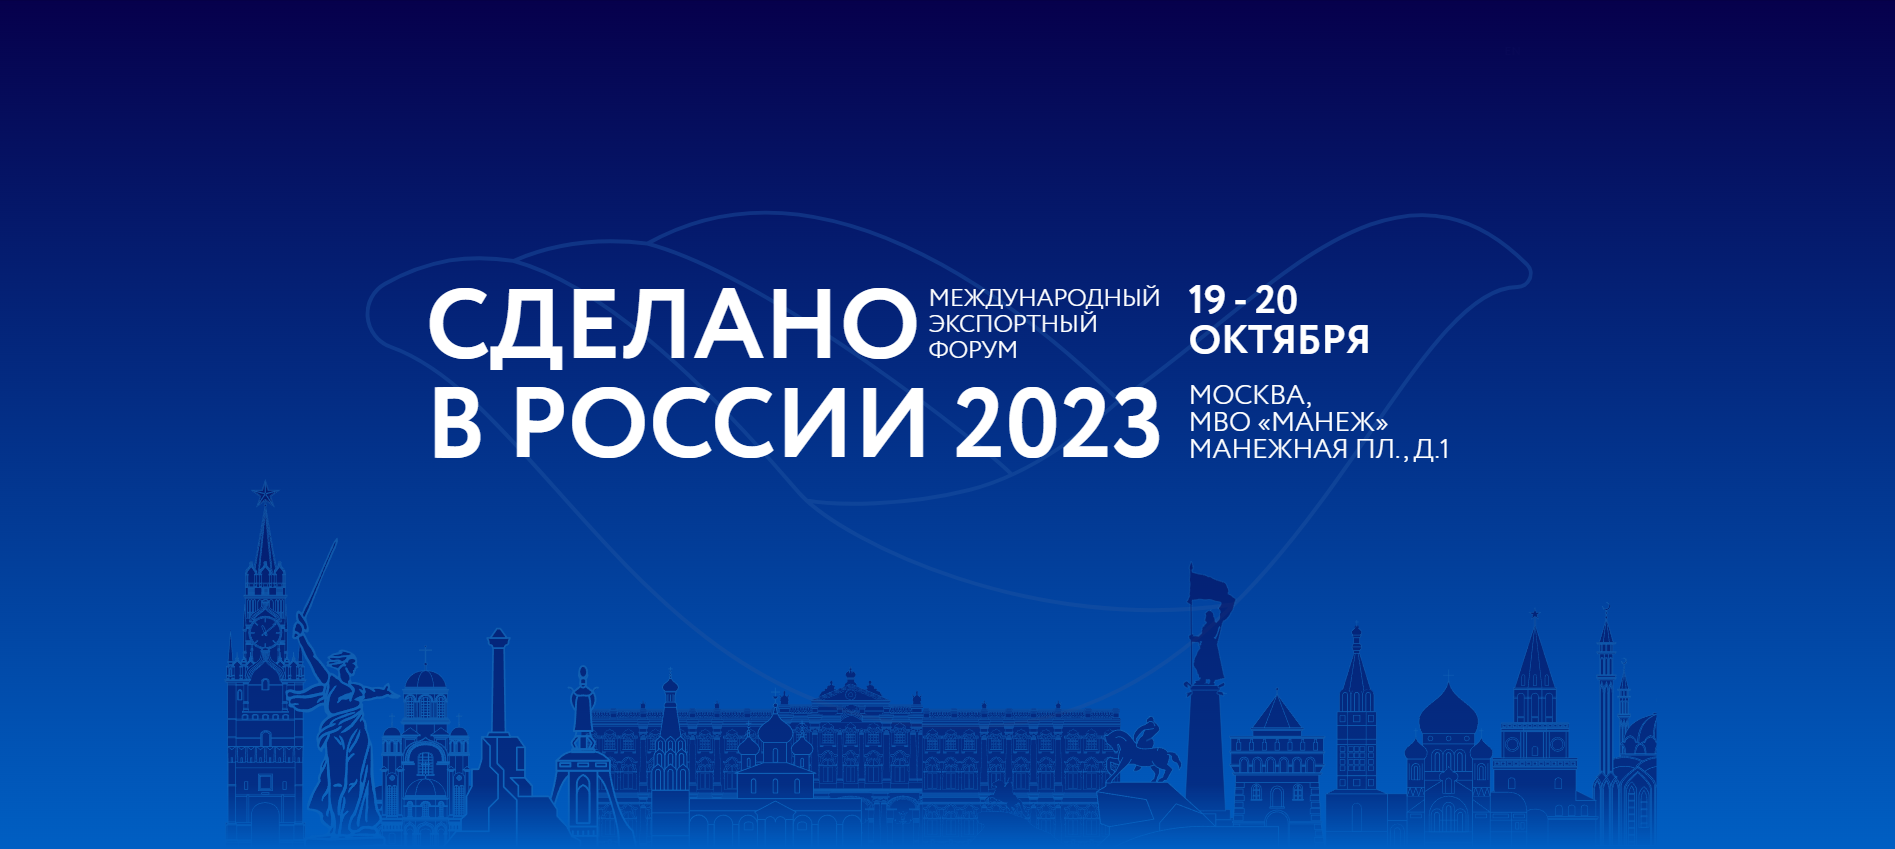 ГК «Промомед» примет участие в Международном экспортном форуме «Сделано в России»